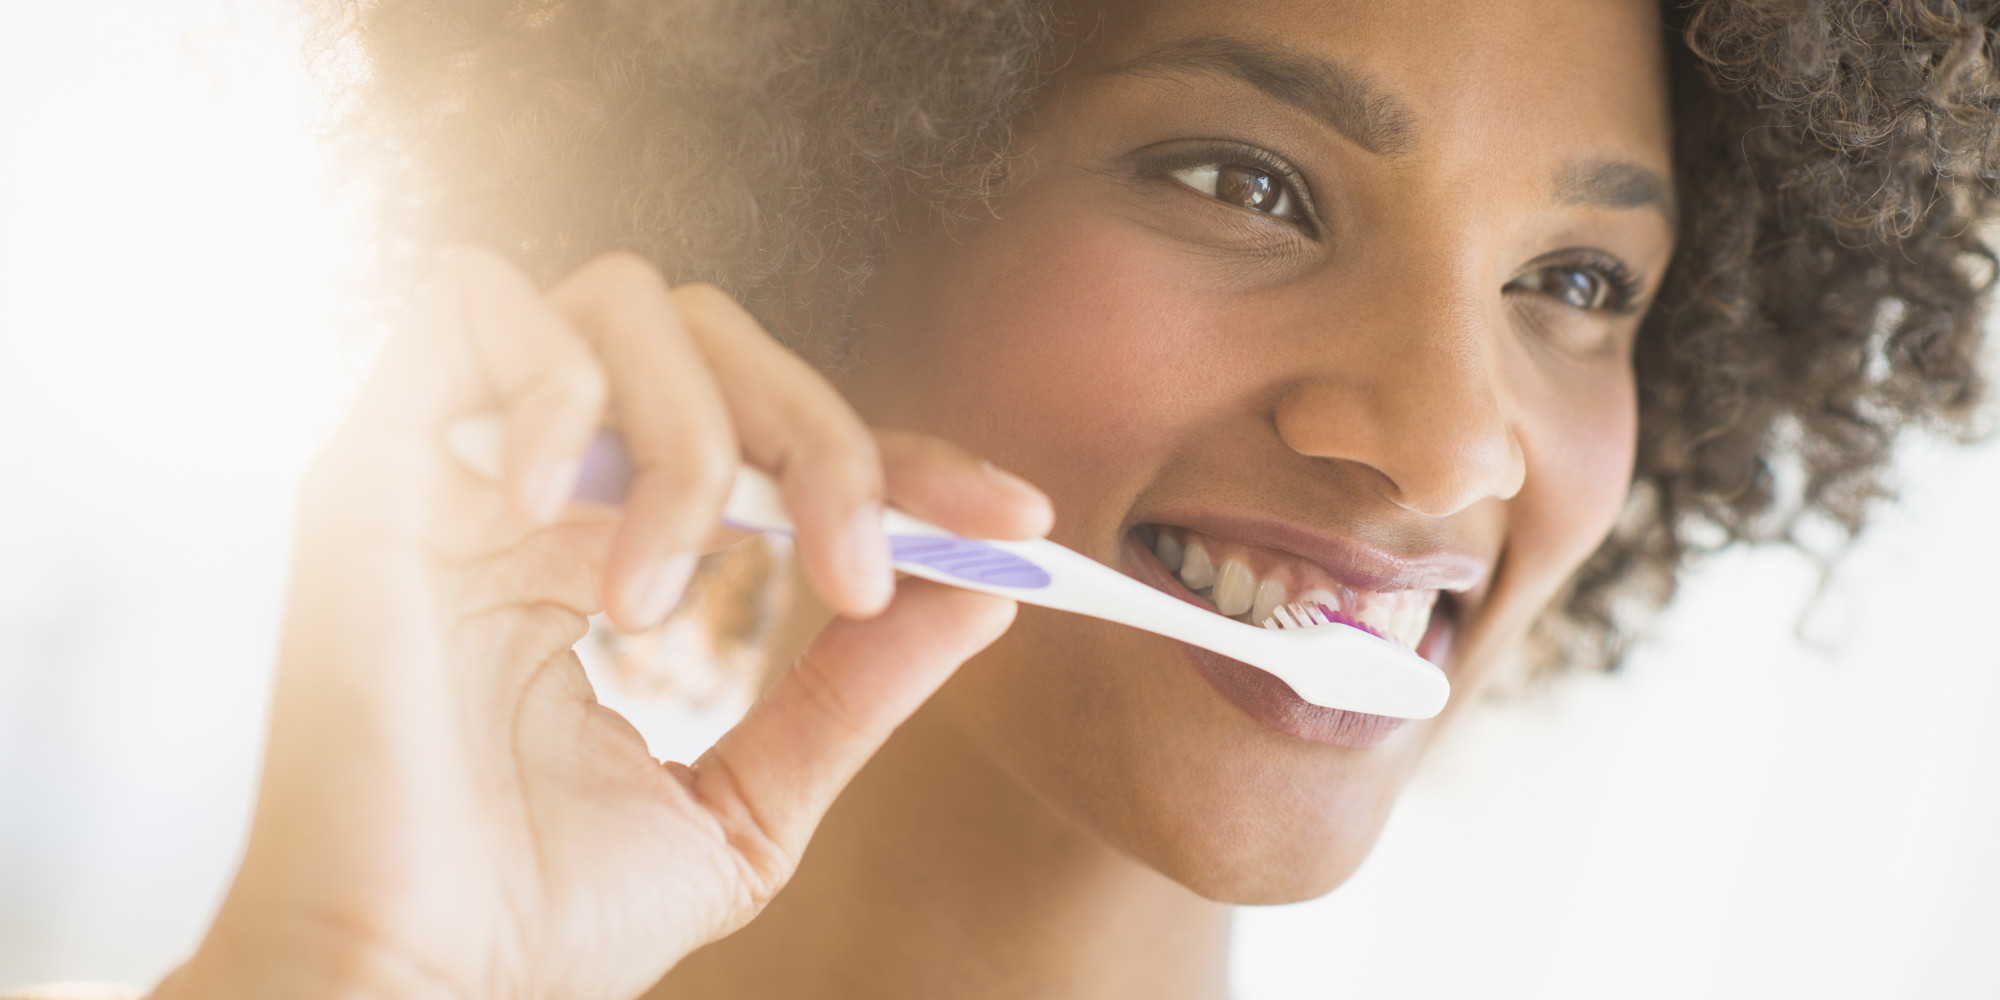  Evita cepillar tus dientes con fuerza